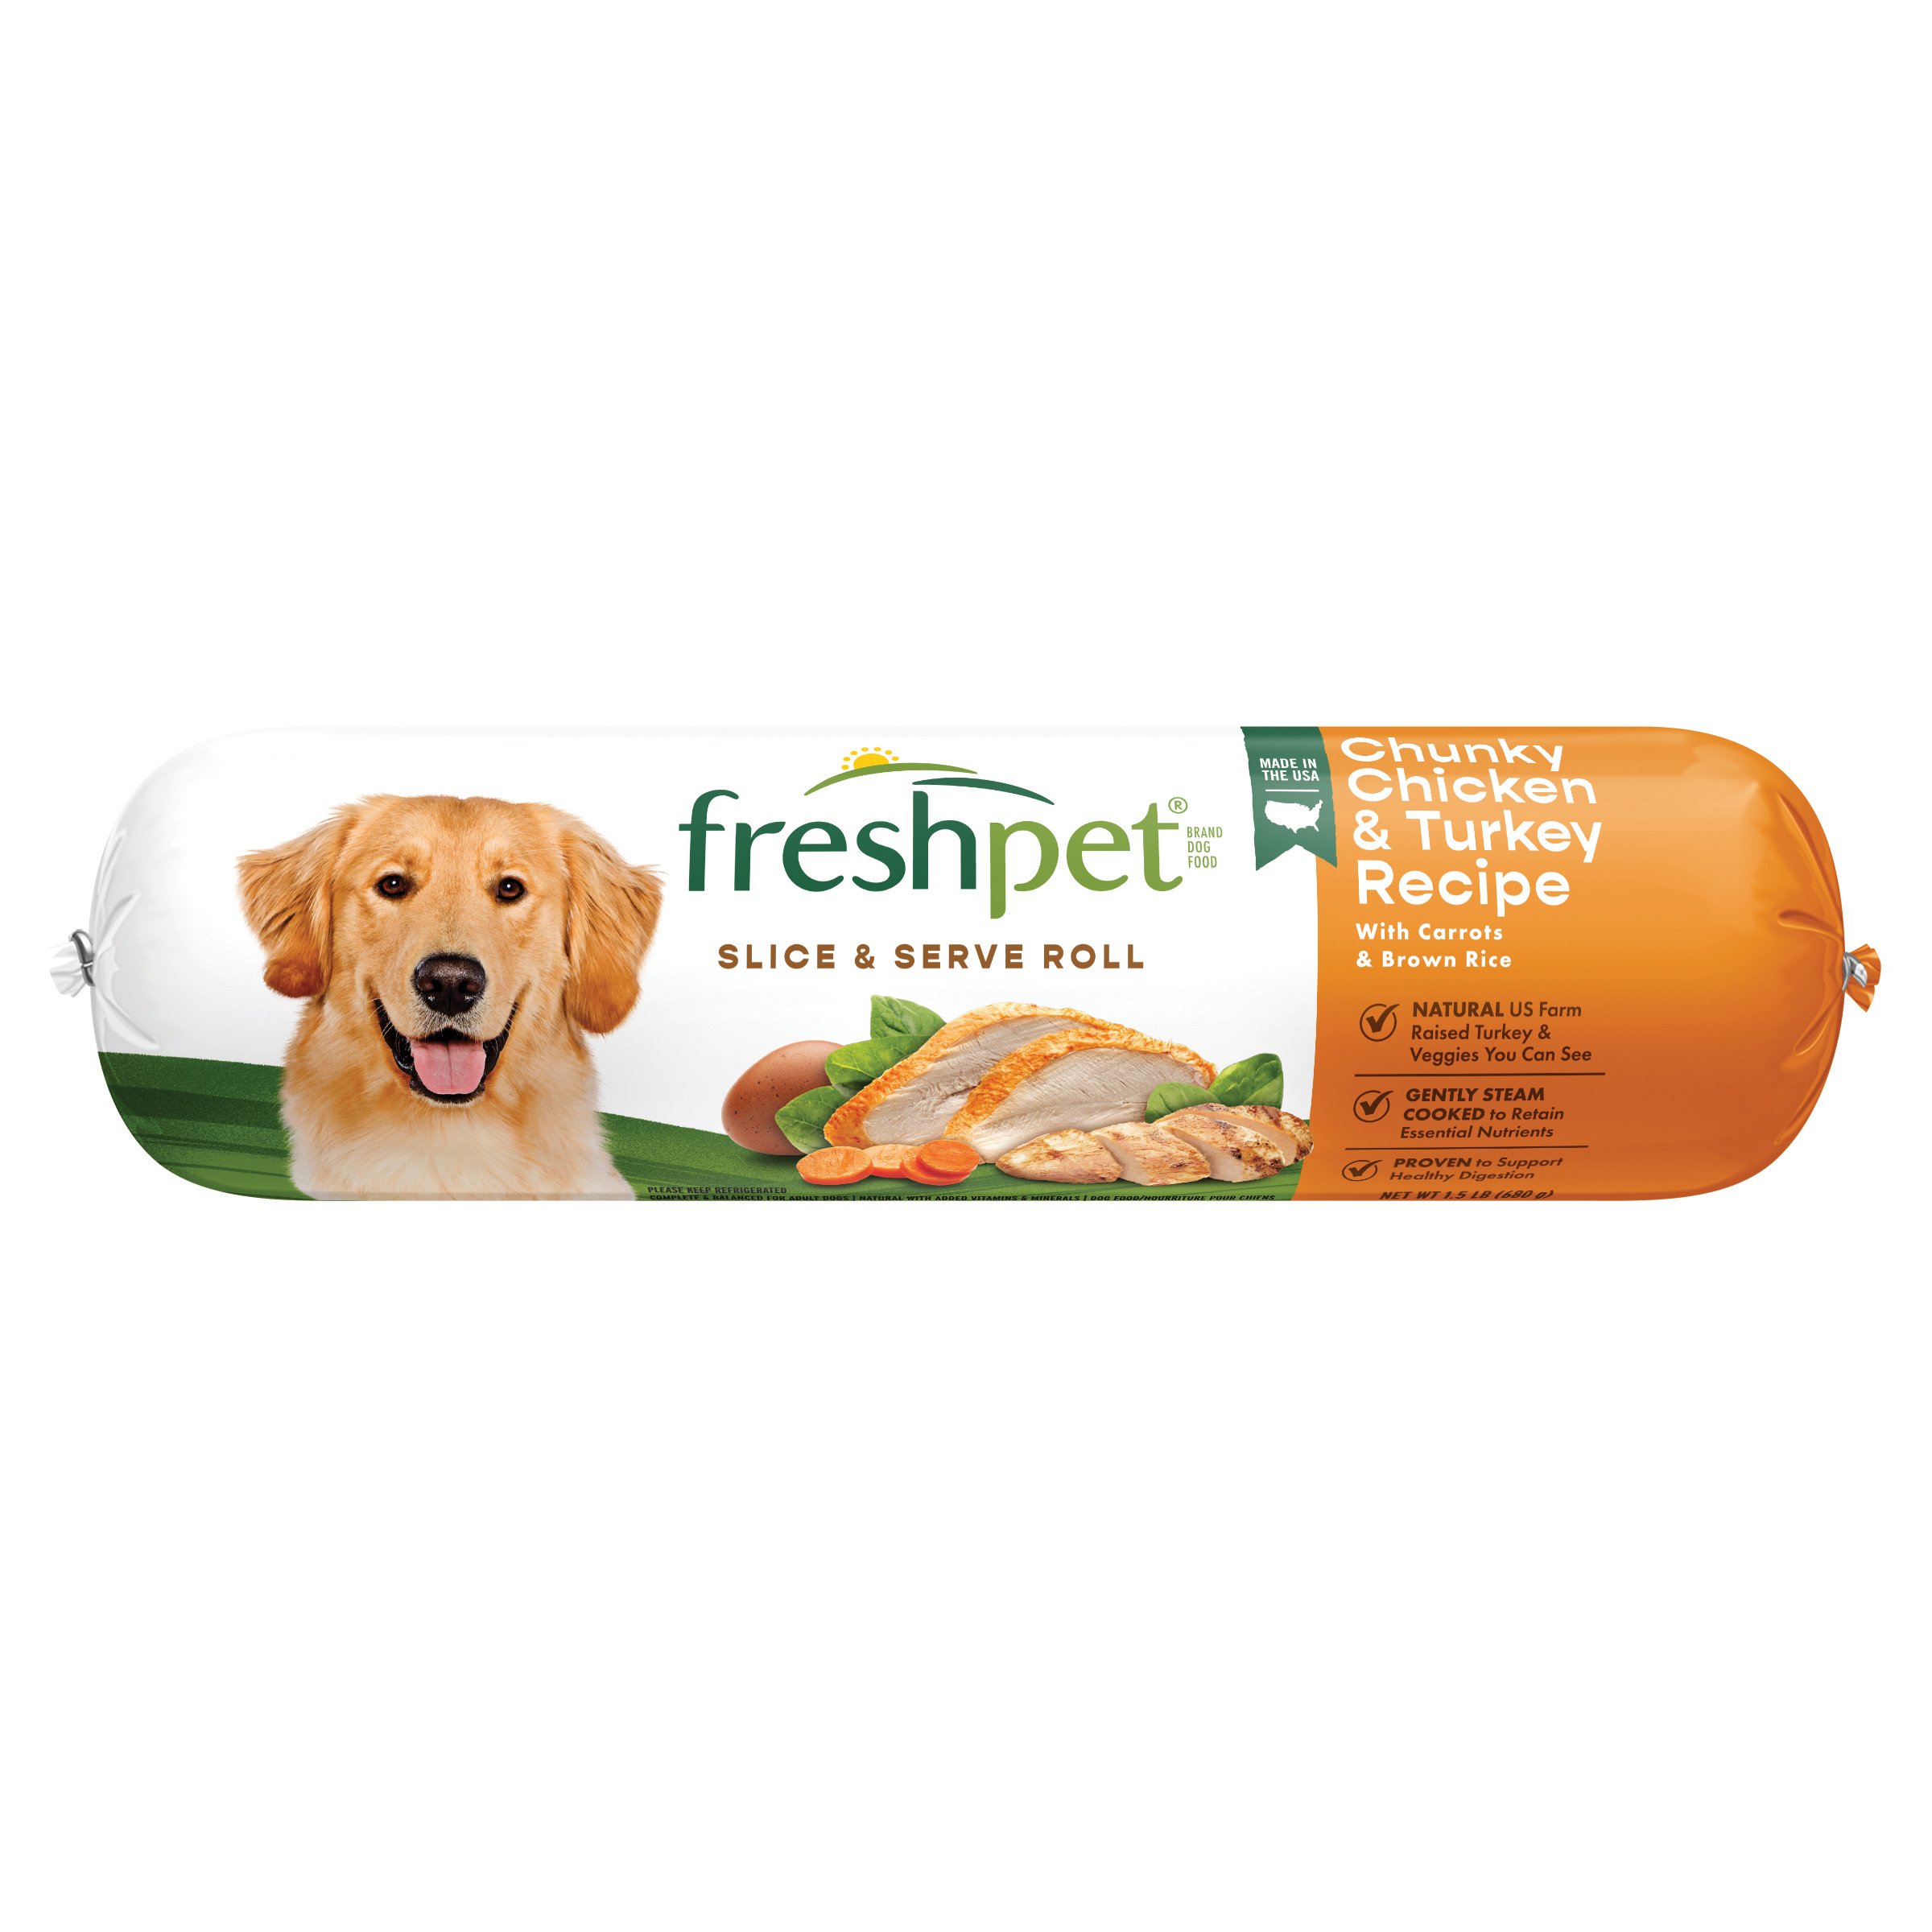 freshpet vital dog food